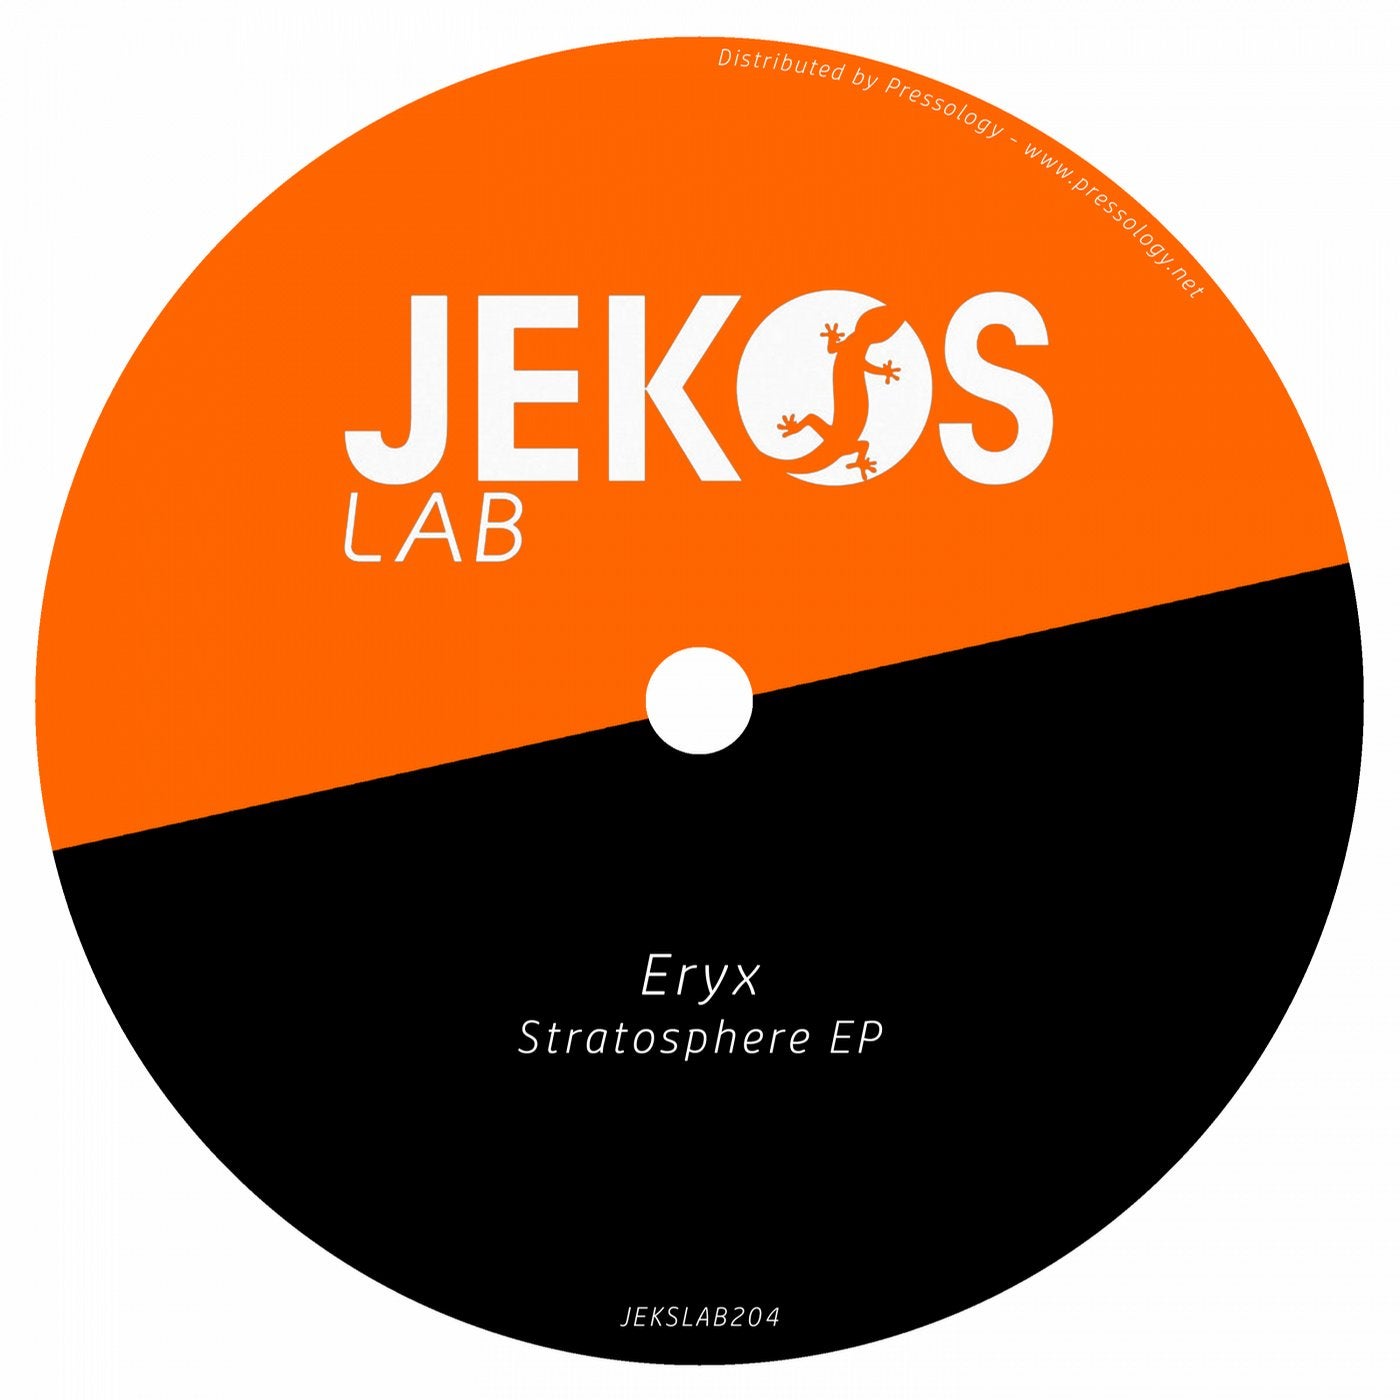 Stratosphere EP